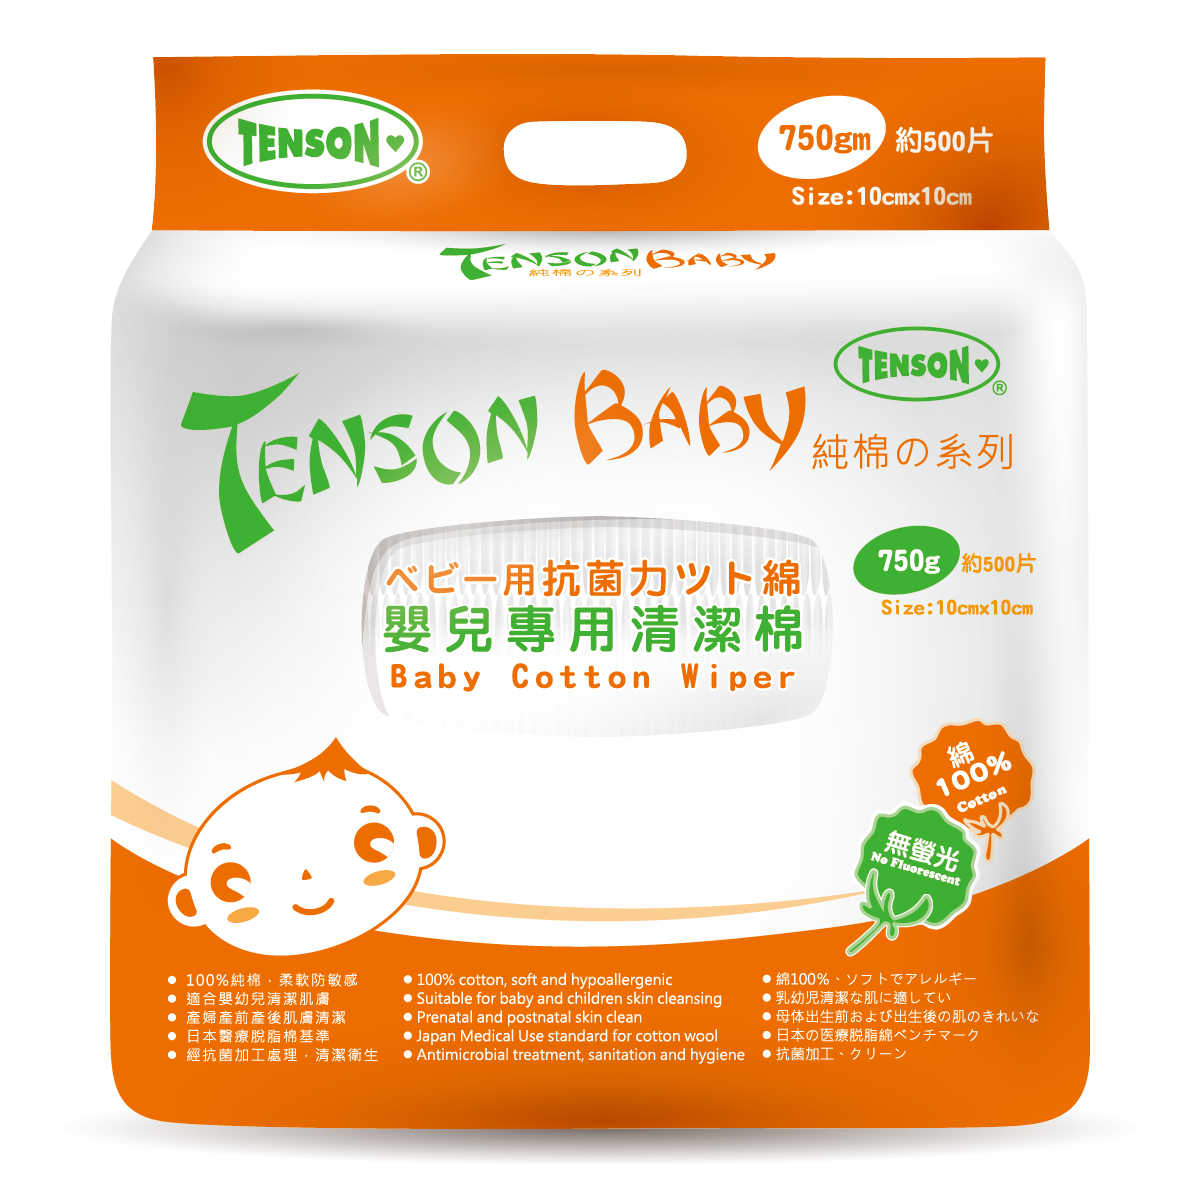 Tenson 嬰兒專用清潔棉 500片裝 (10x10cm)